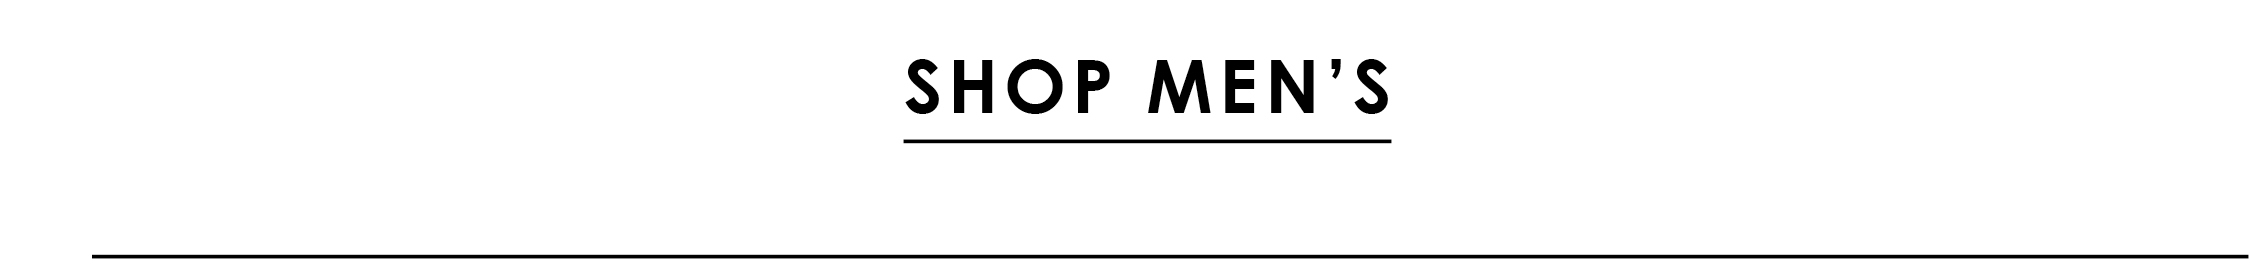 Shop Men's Warehouse Sale